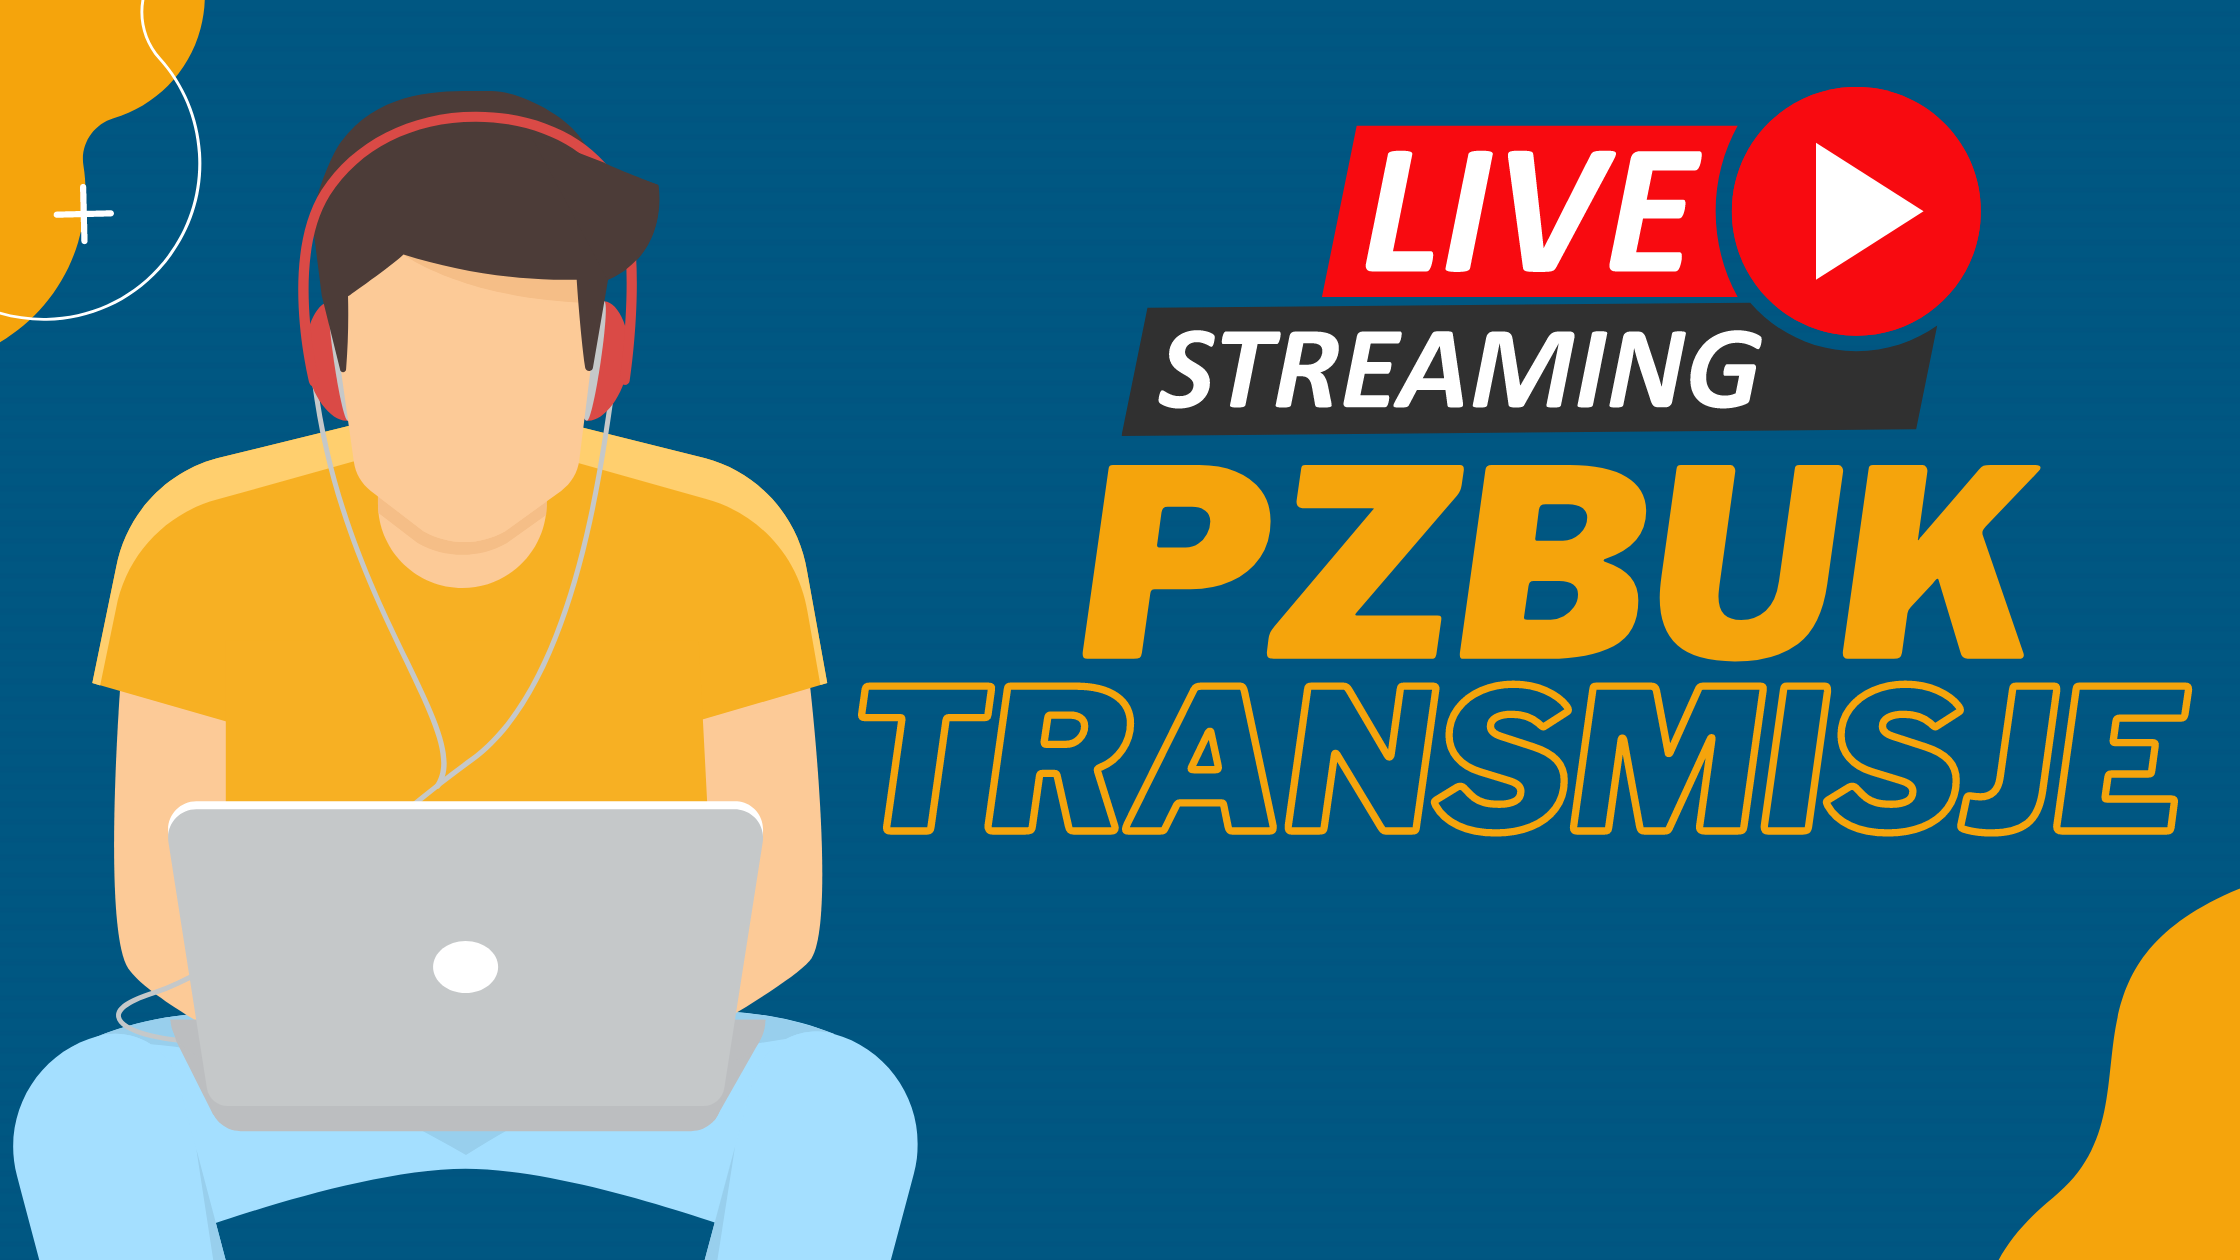 PZBuk live streaming - transmicje na żywo